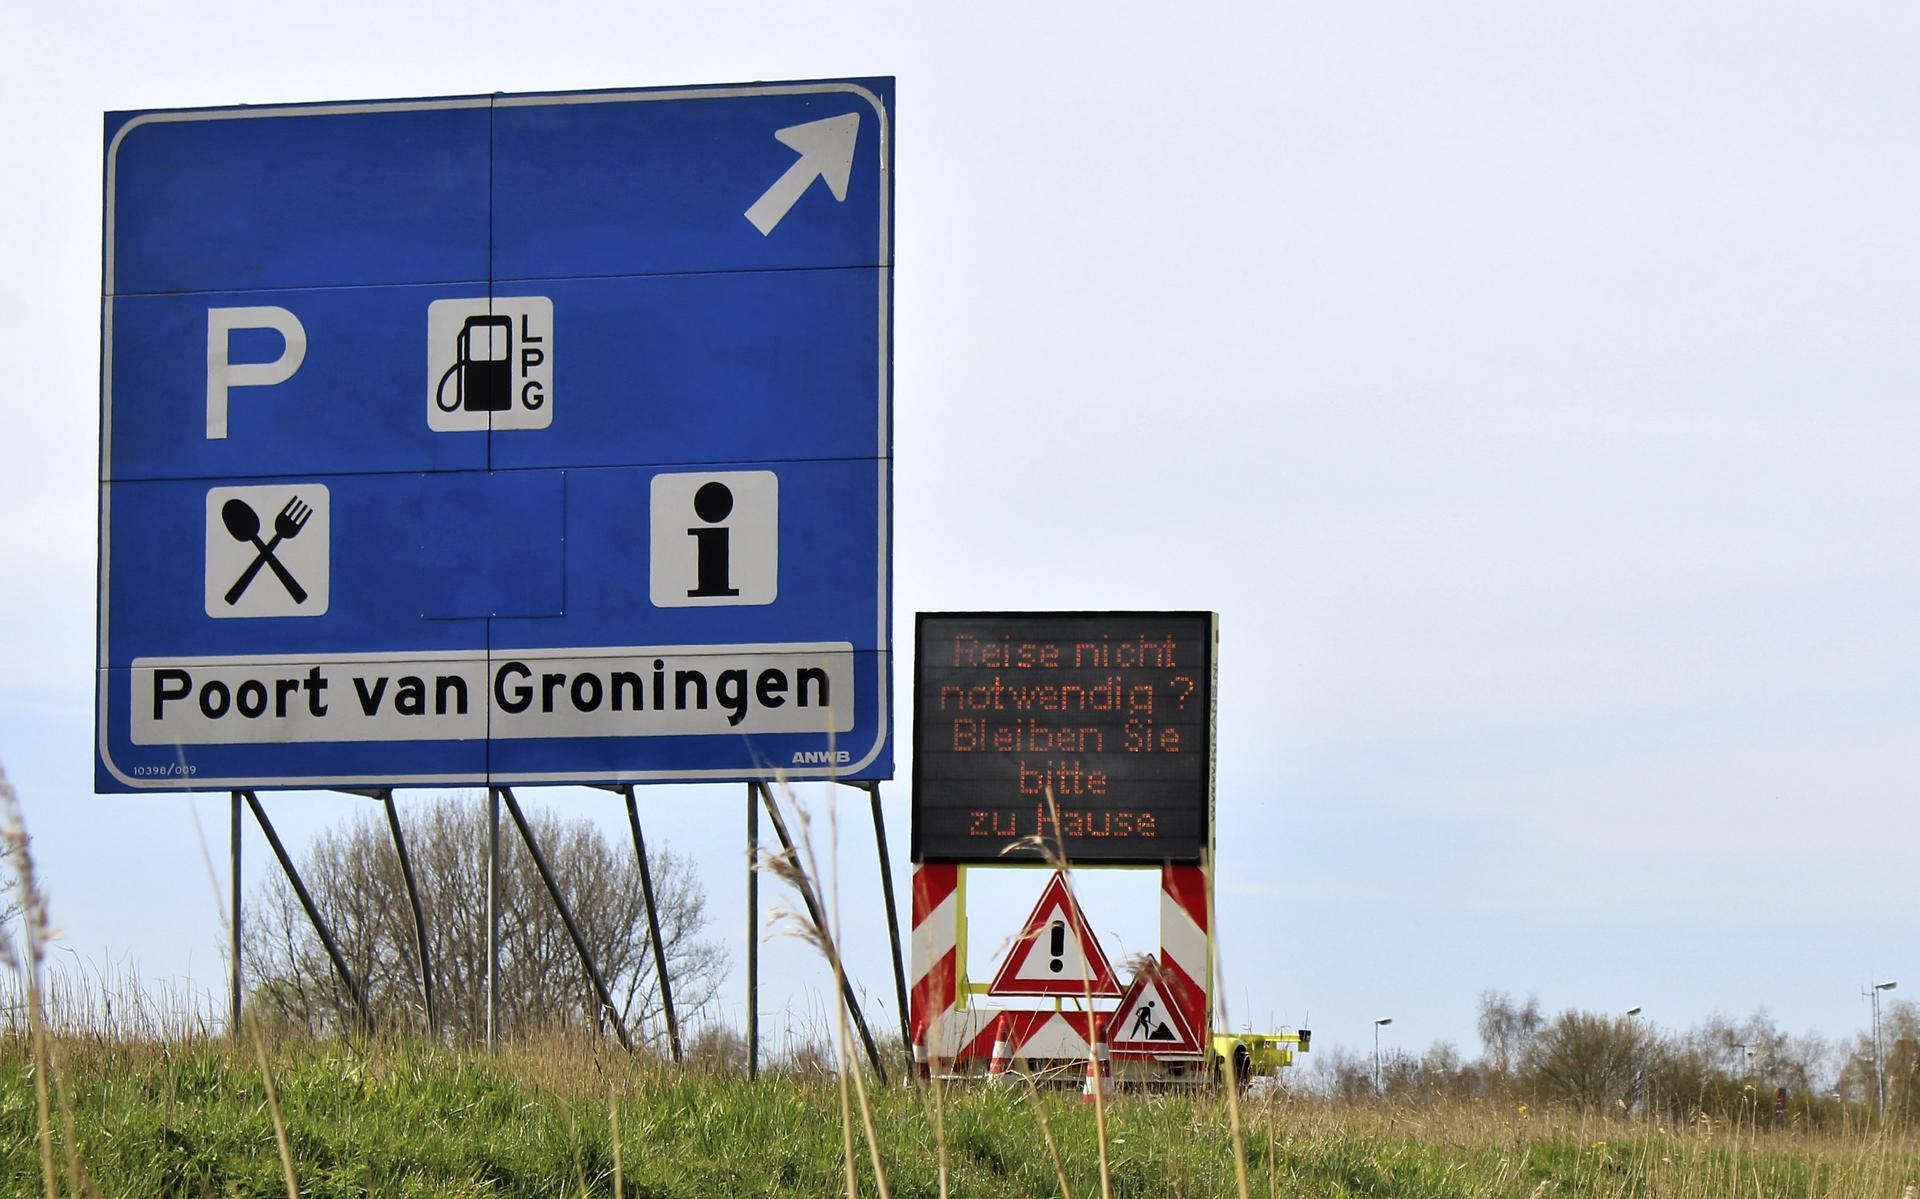 Poort van Groningen, grensovergang Bad Nieuweschans-Bunde.